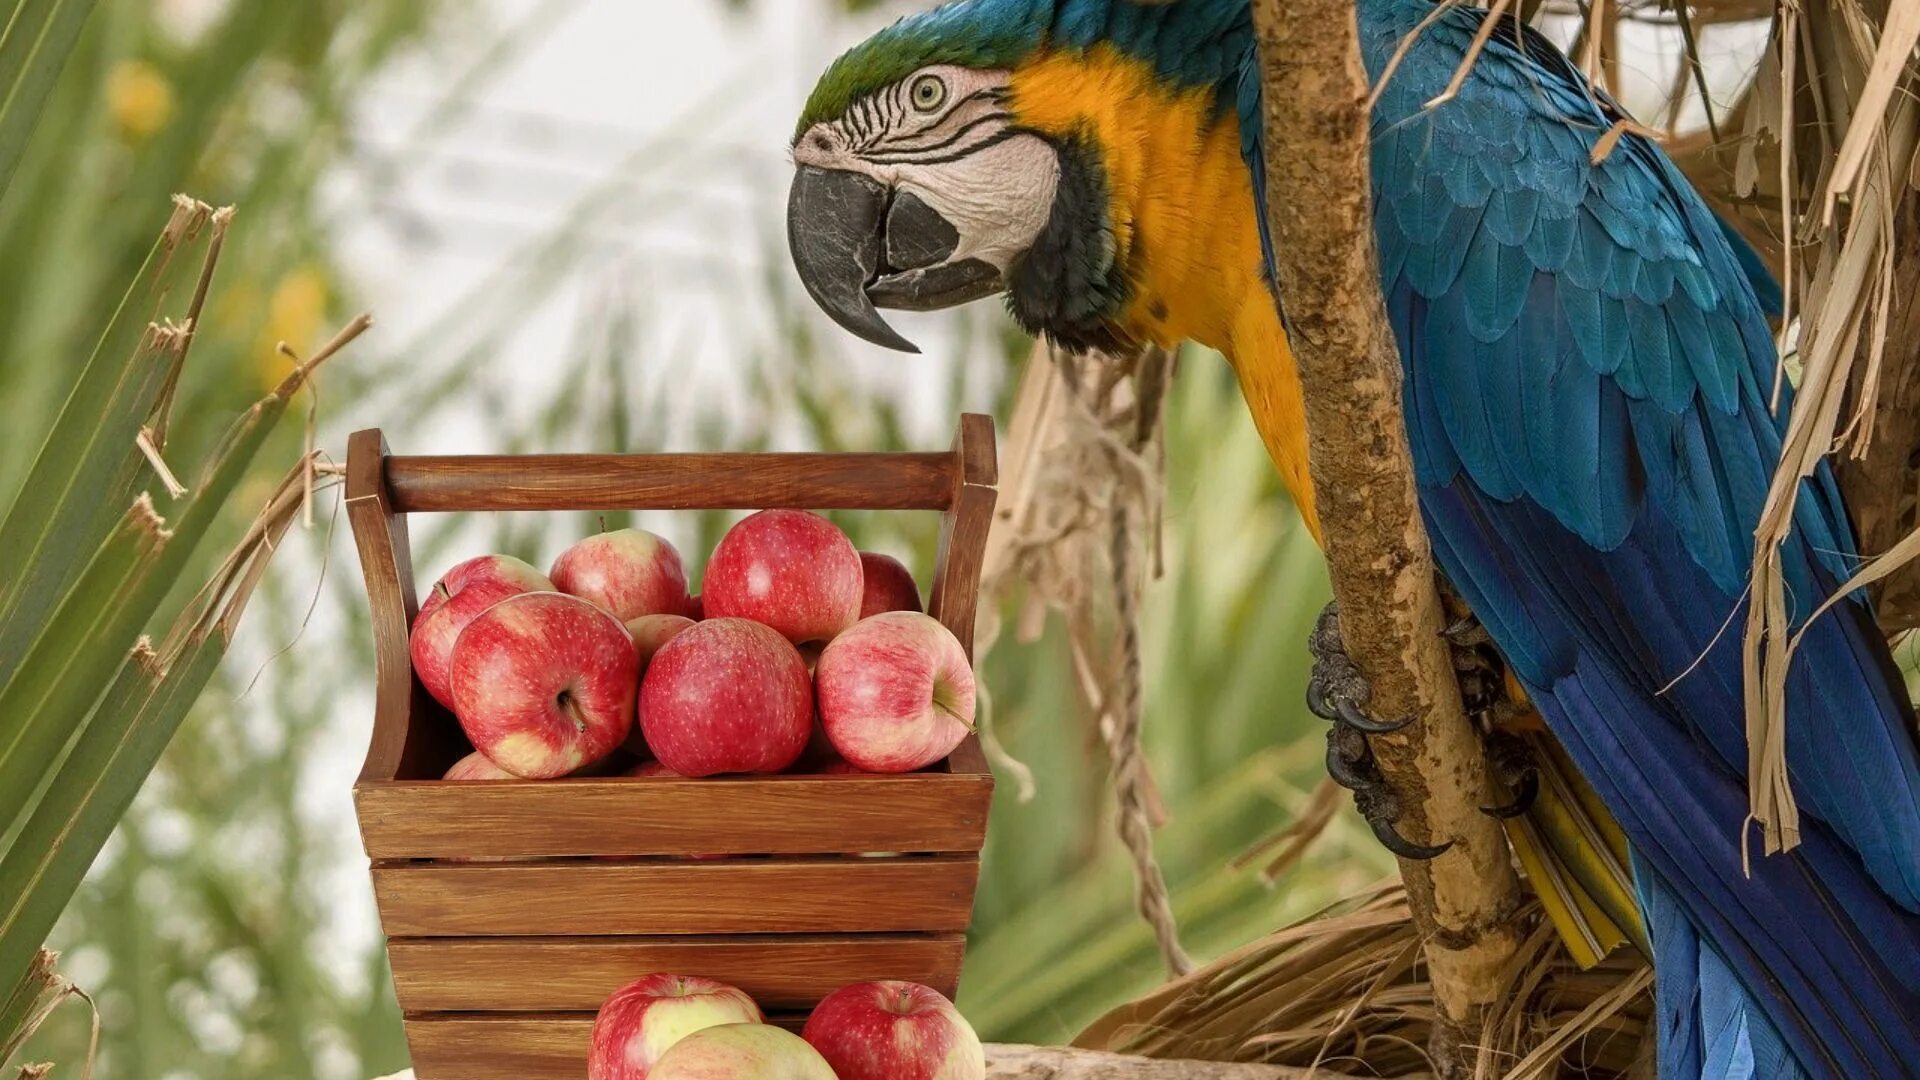 Можно попугаям яблоко. Попугай и яблоко. Попугаи питание в естественной среде. Яблоко попугаю. Попугаи едят фрукты в джунглях.